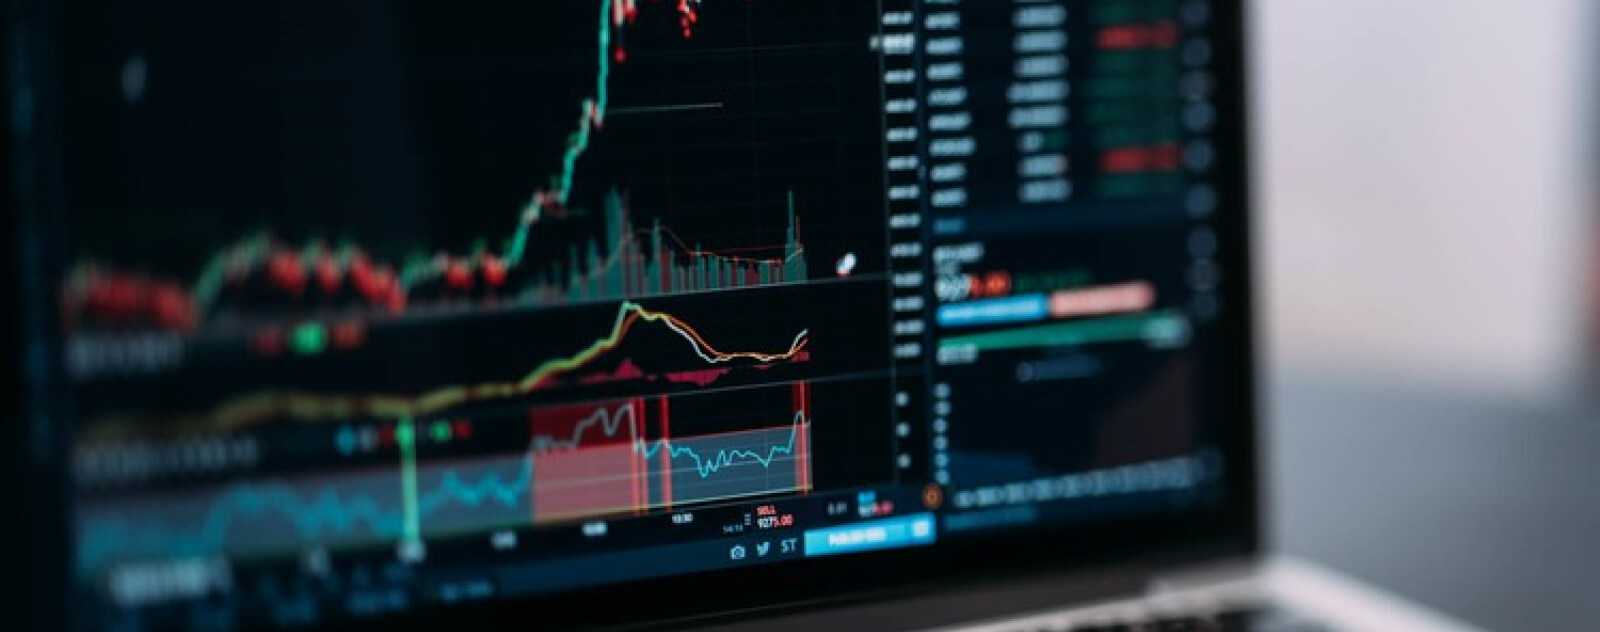 Python pour l'Analyse Financière et le Trading Algorithmique